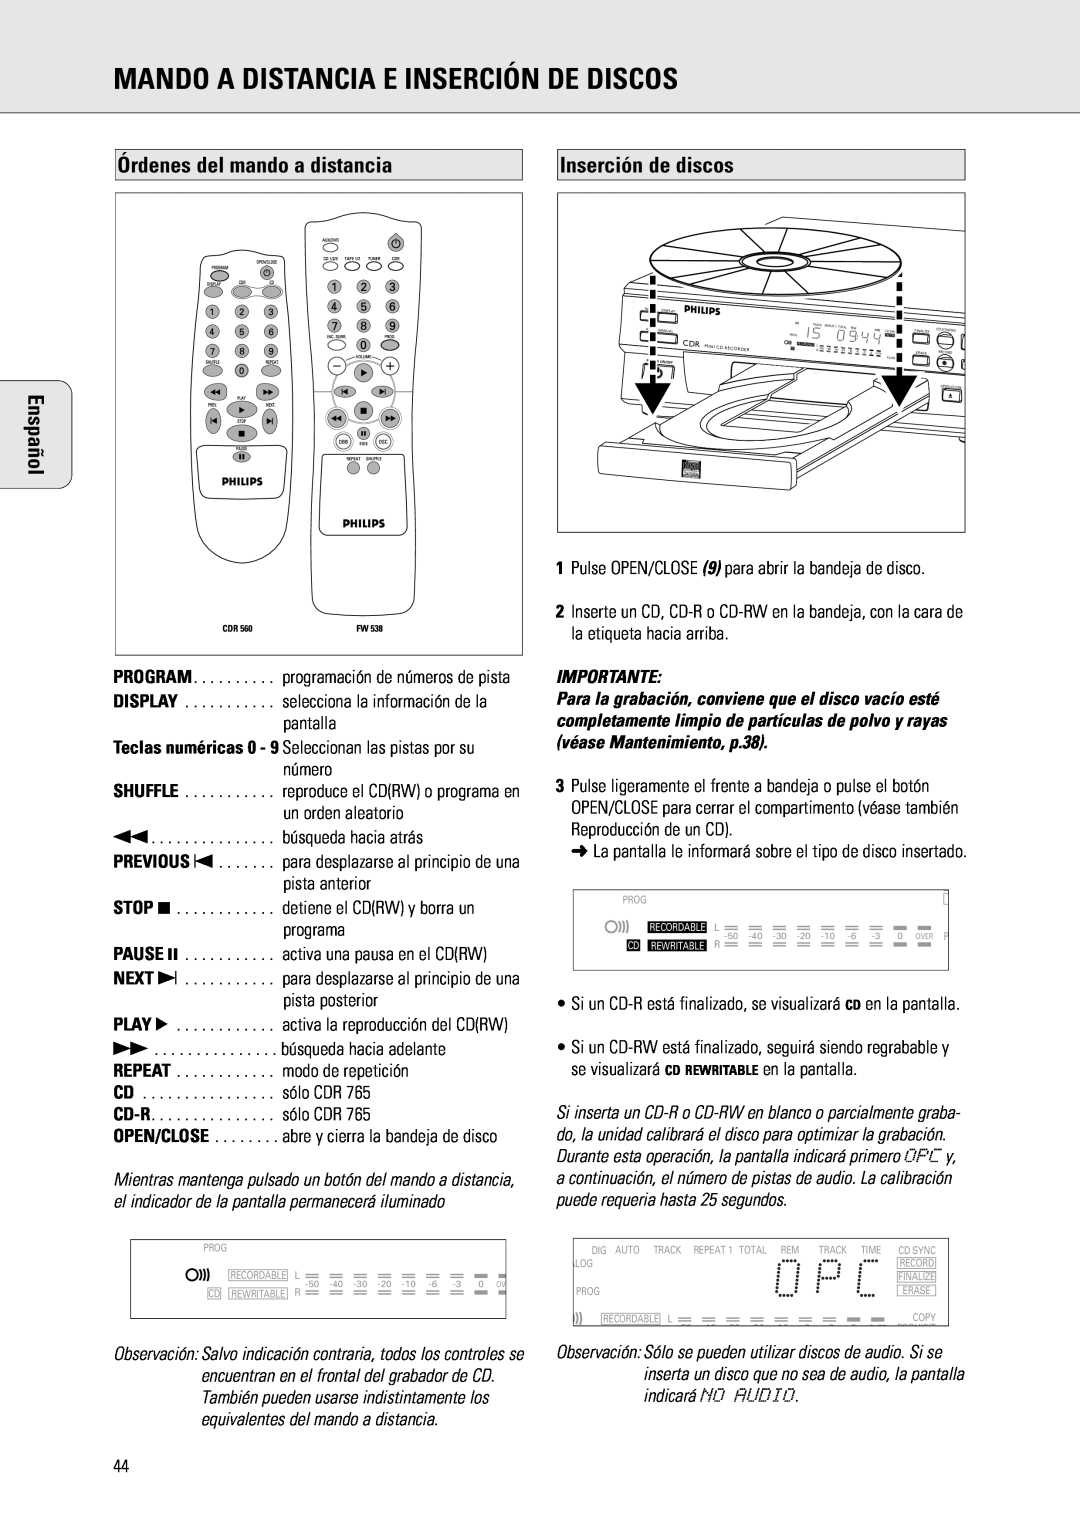 Philips CDR 560 manual Mando A Distancia E Inserción De Discos, Órdenes del mando a distancia Enspañol, Inserción de discos 